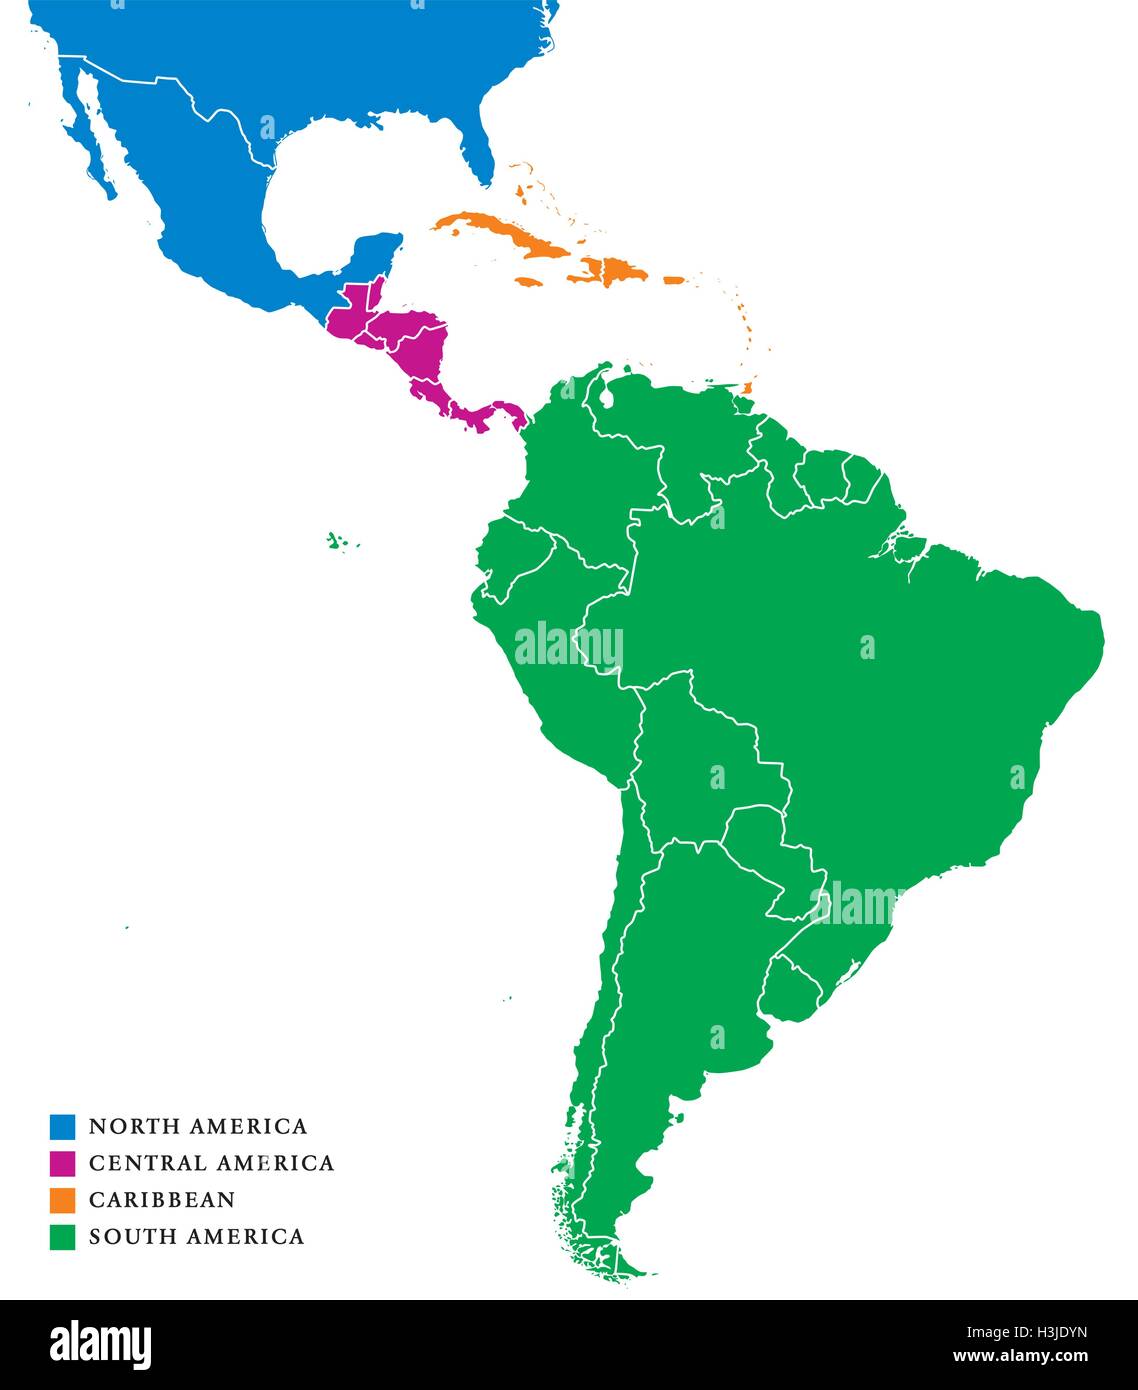 Lateinamerika Subregionen Karte. Die Subregionen Karibik, Nord-, Mittel- und Südamerika in verschiedenen Farben und Grenzen. Vektor Stock Vektor